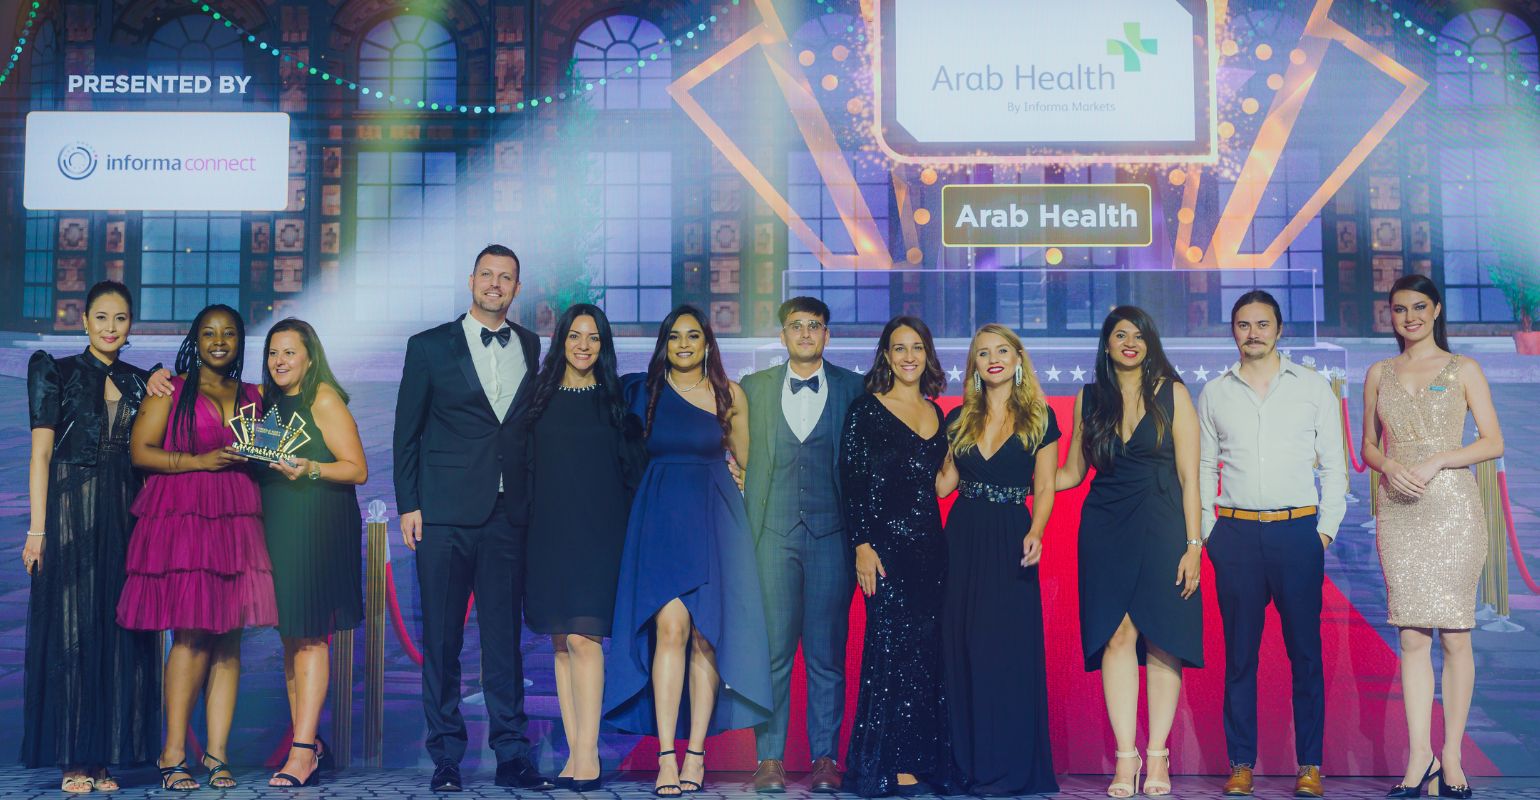 وقد توج معرض الصحة العربي 2023 بجائزة أفضل معرض لهذا العام